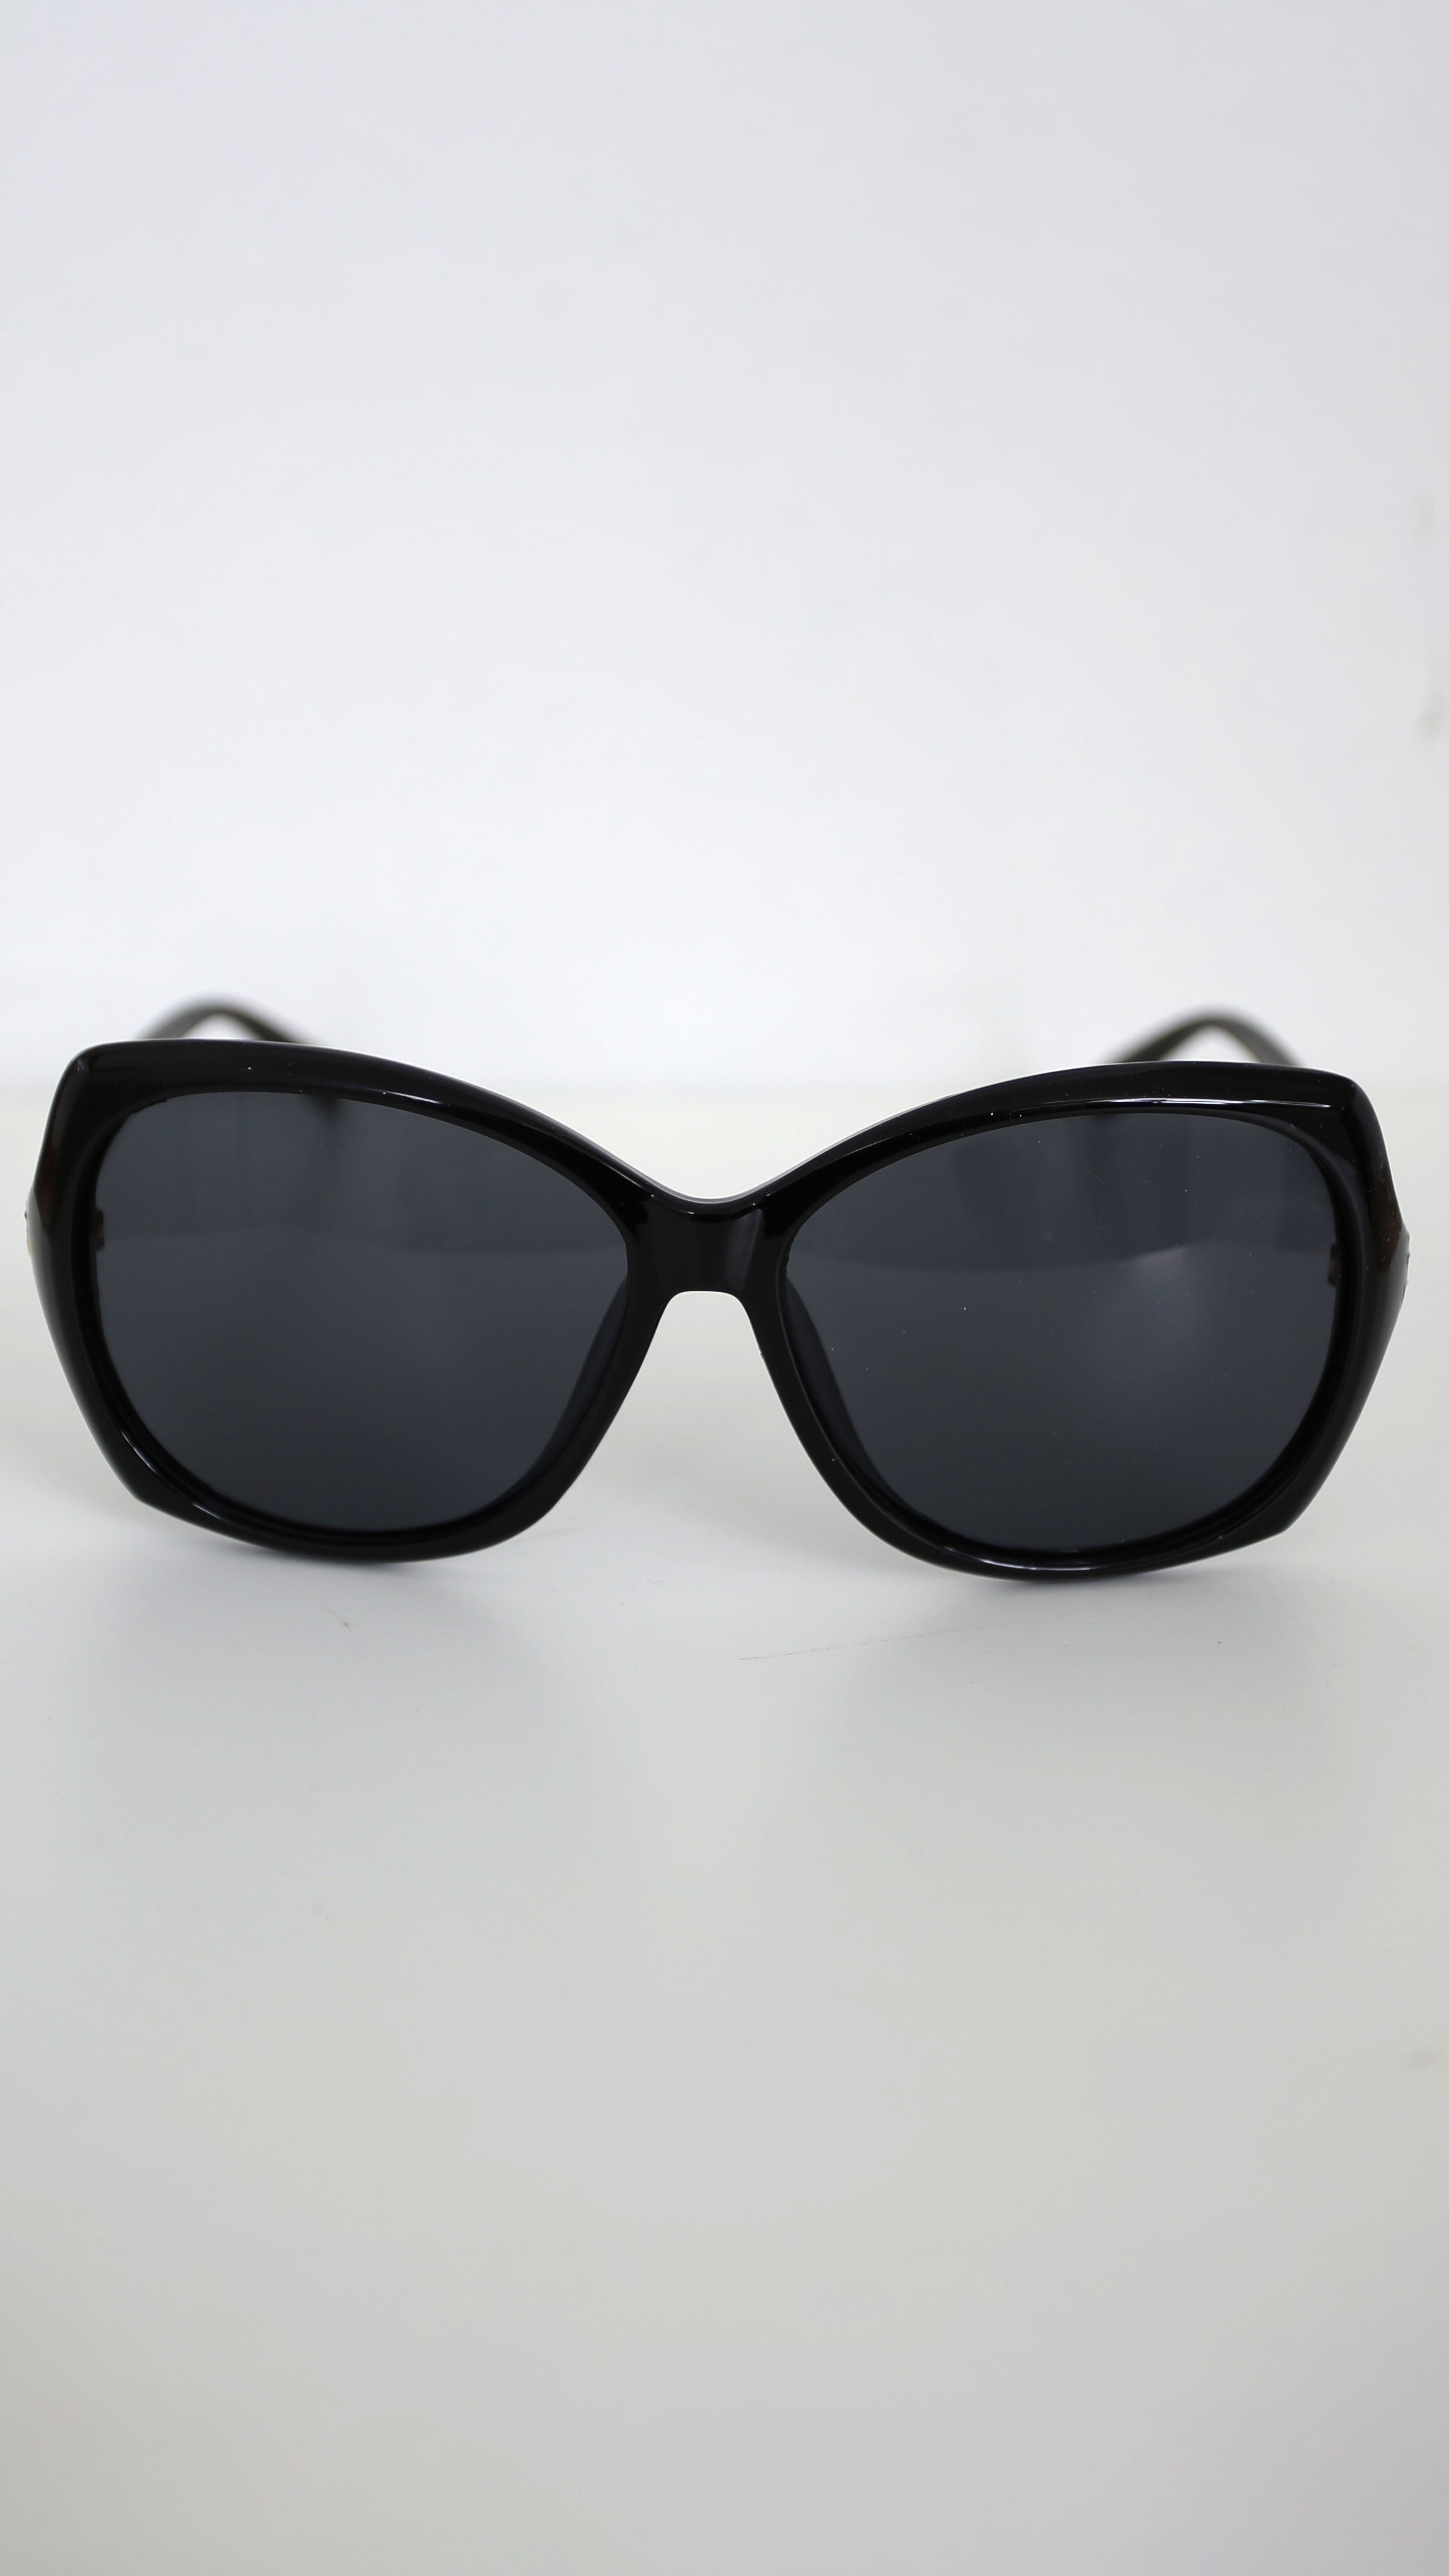 Ninette Black Embellished Temples Sunglasses